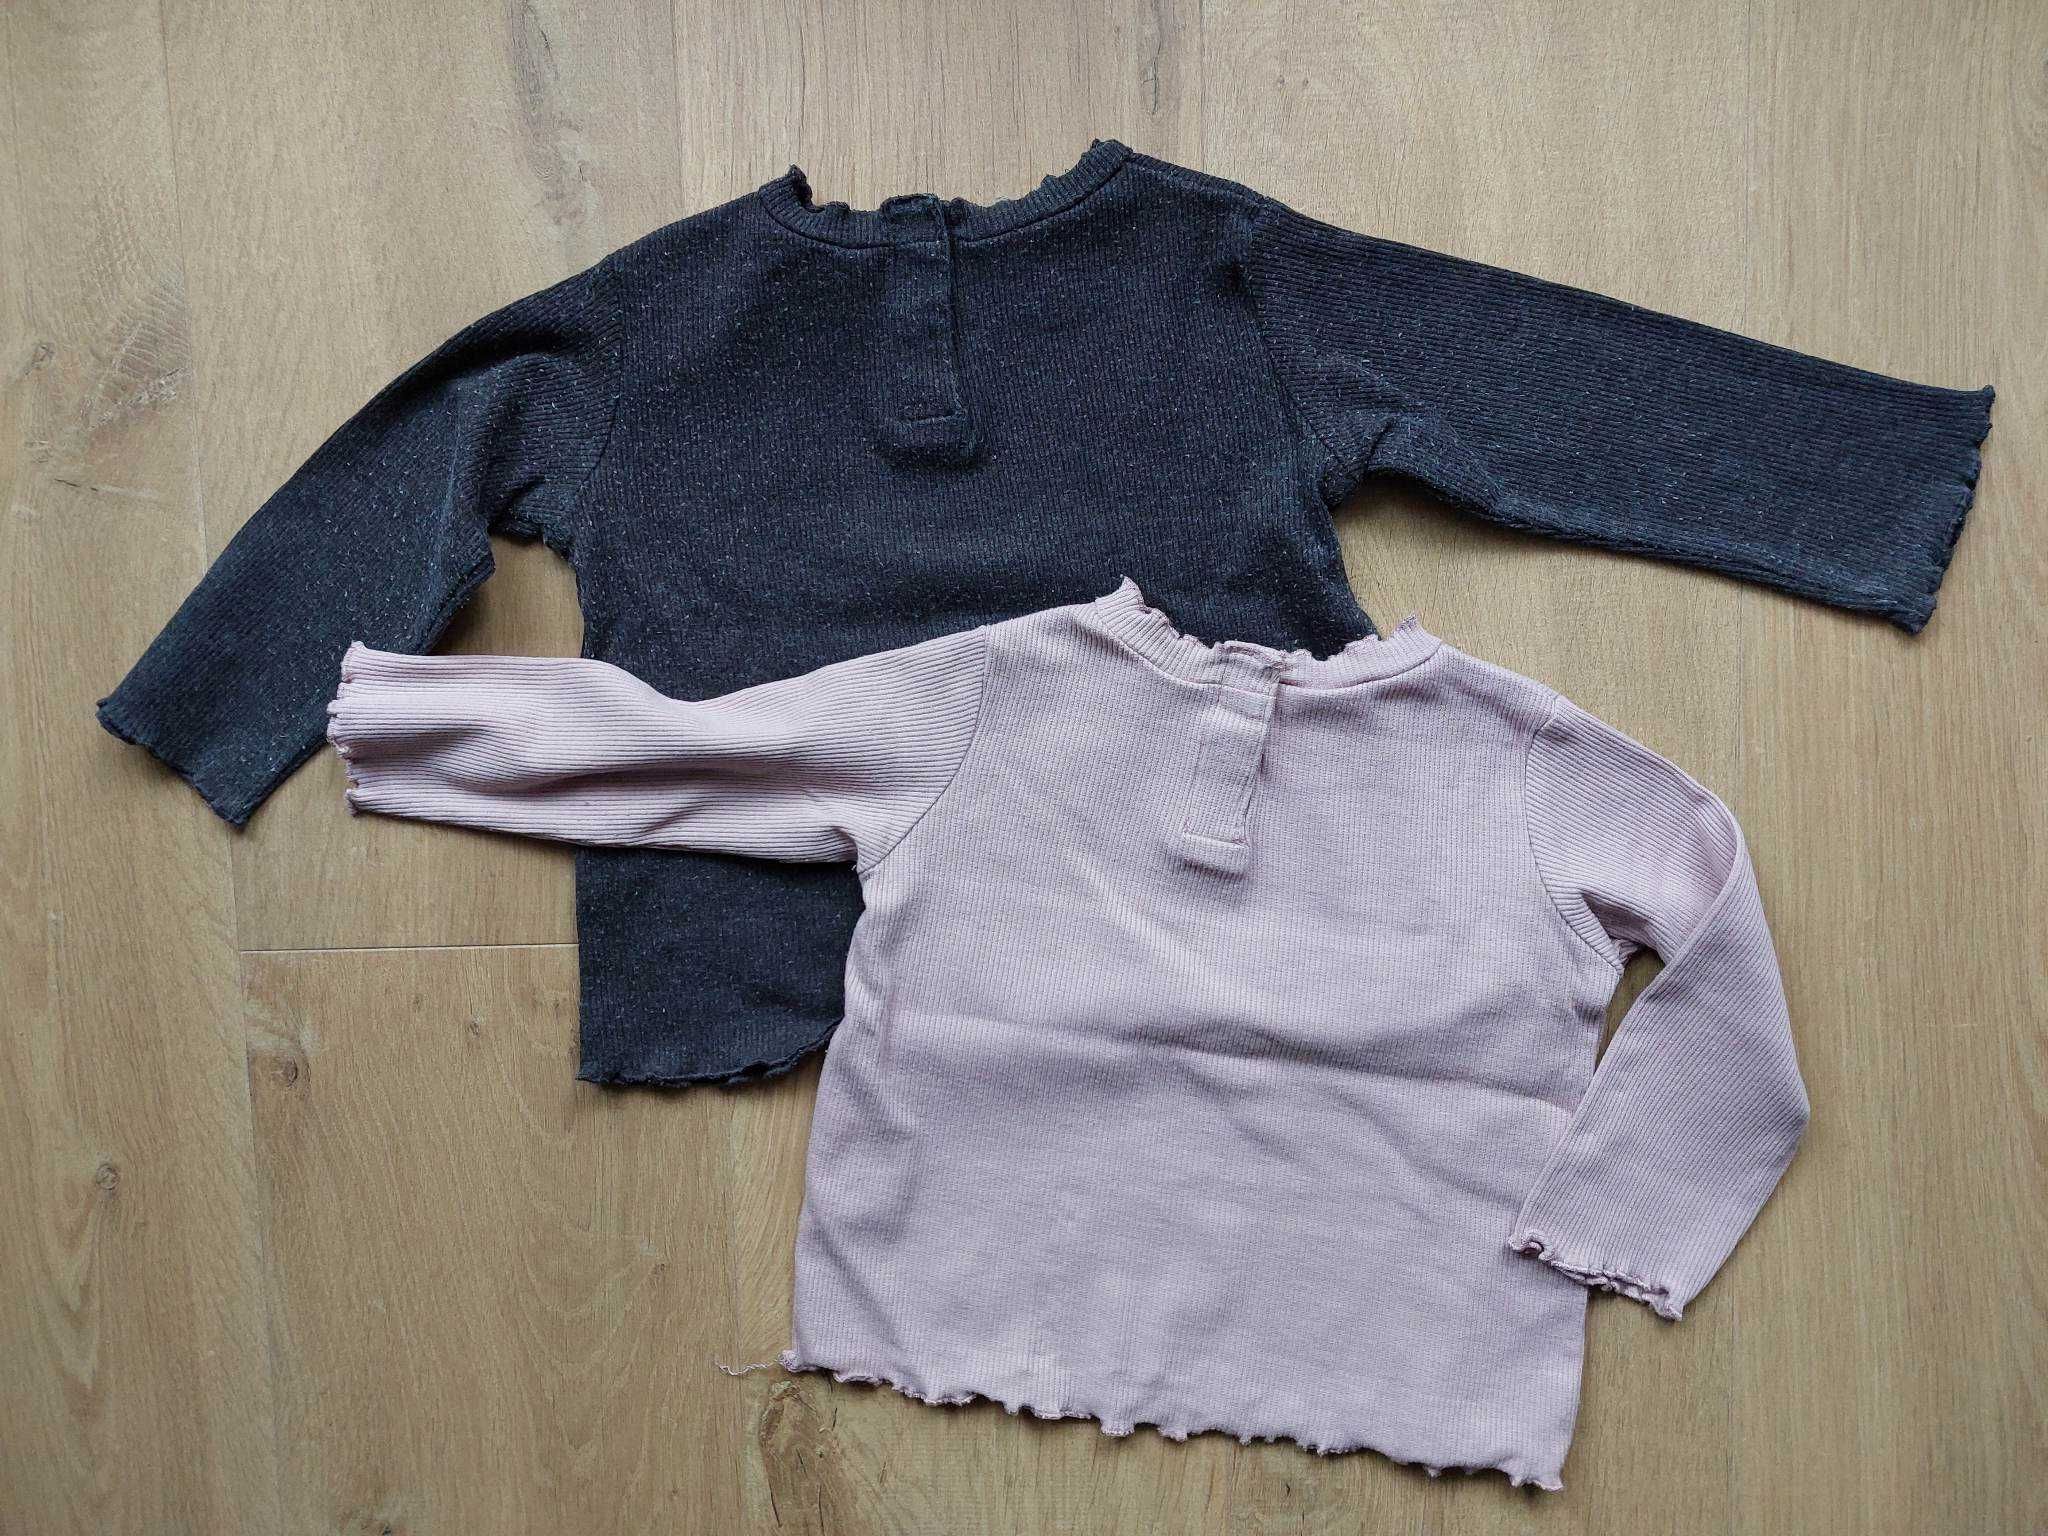 Koszulka Zara, grafitowa i różowa, rozmiar 80, 2 szt.